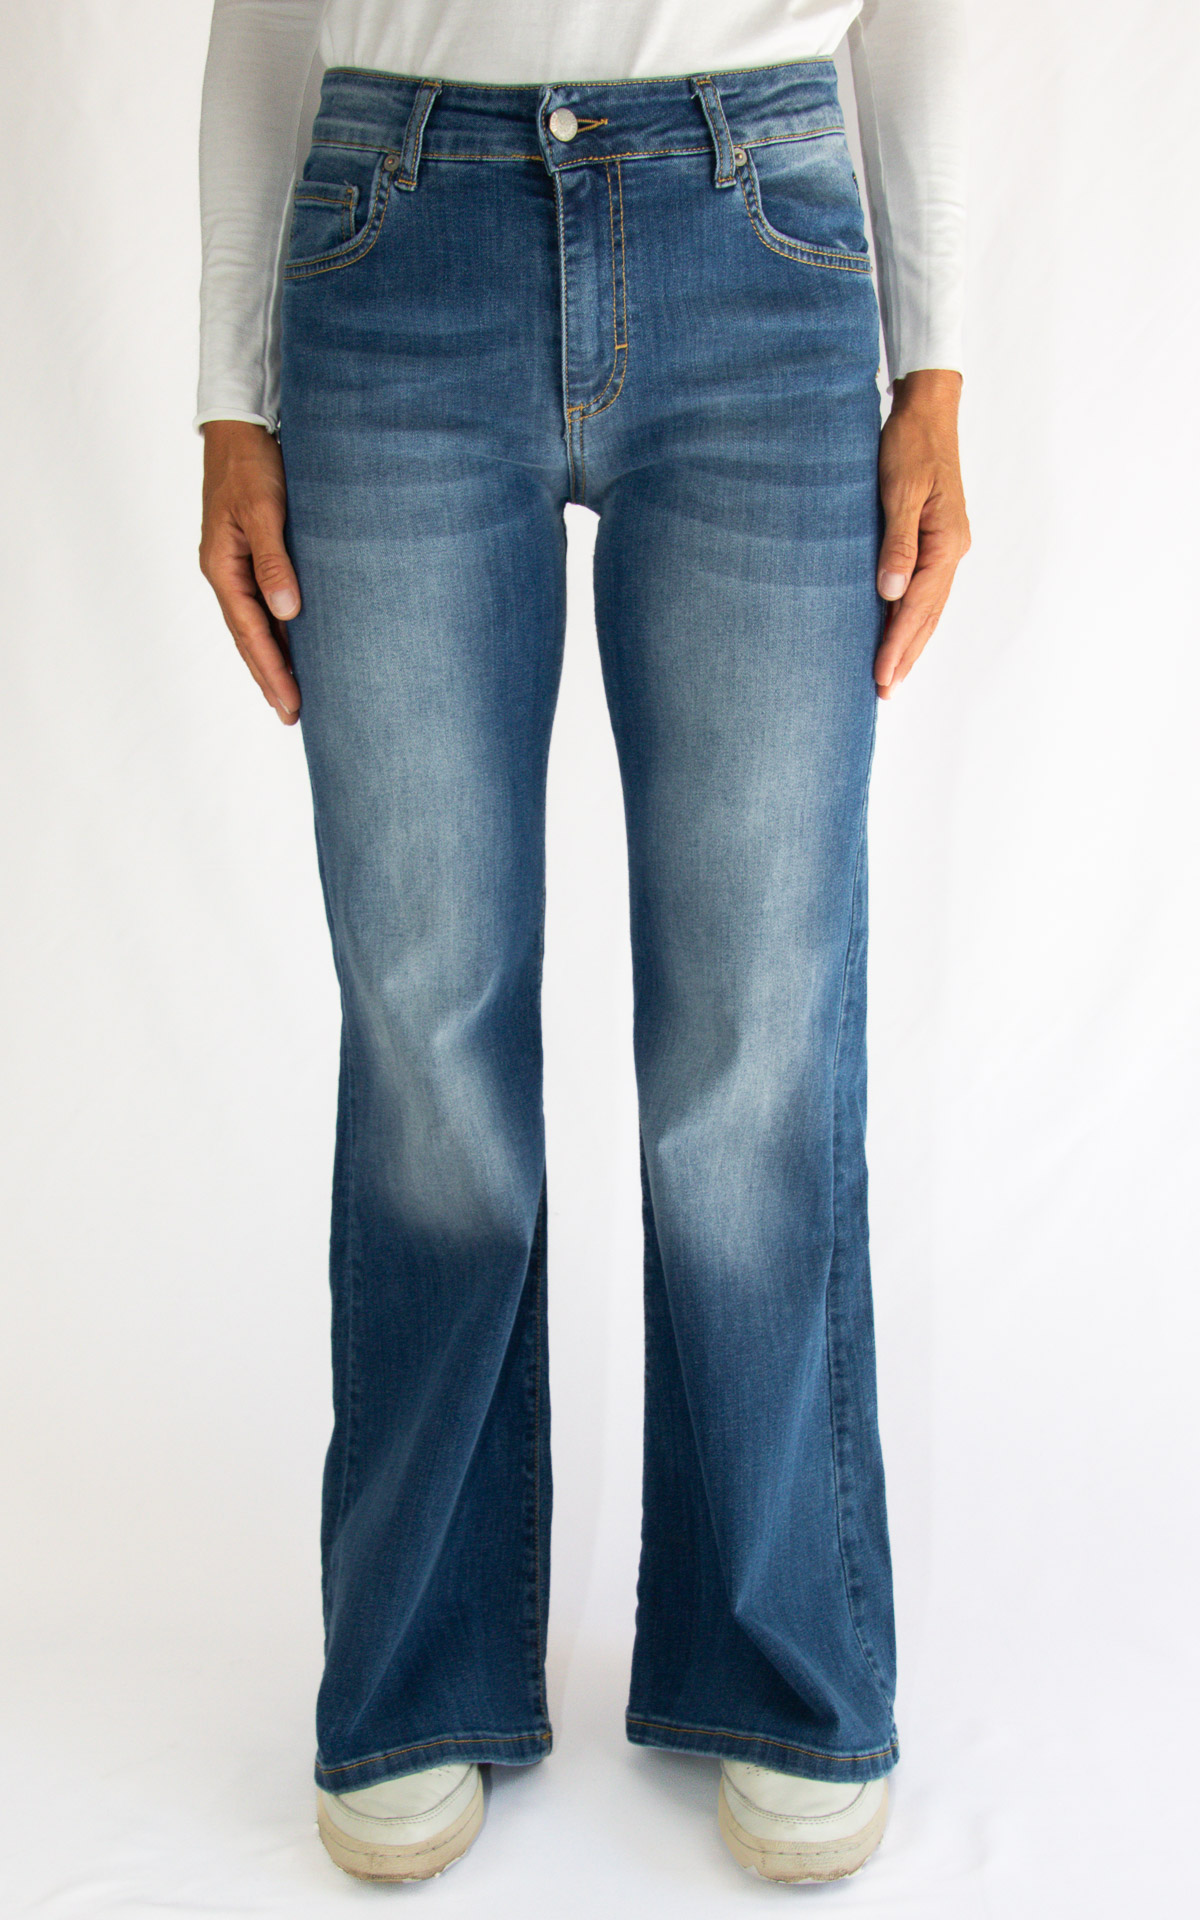 Initial - jeans zampa - LUNA